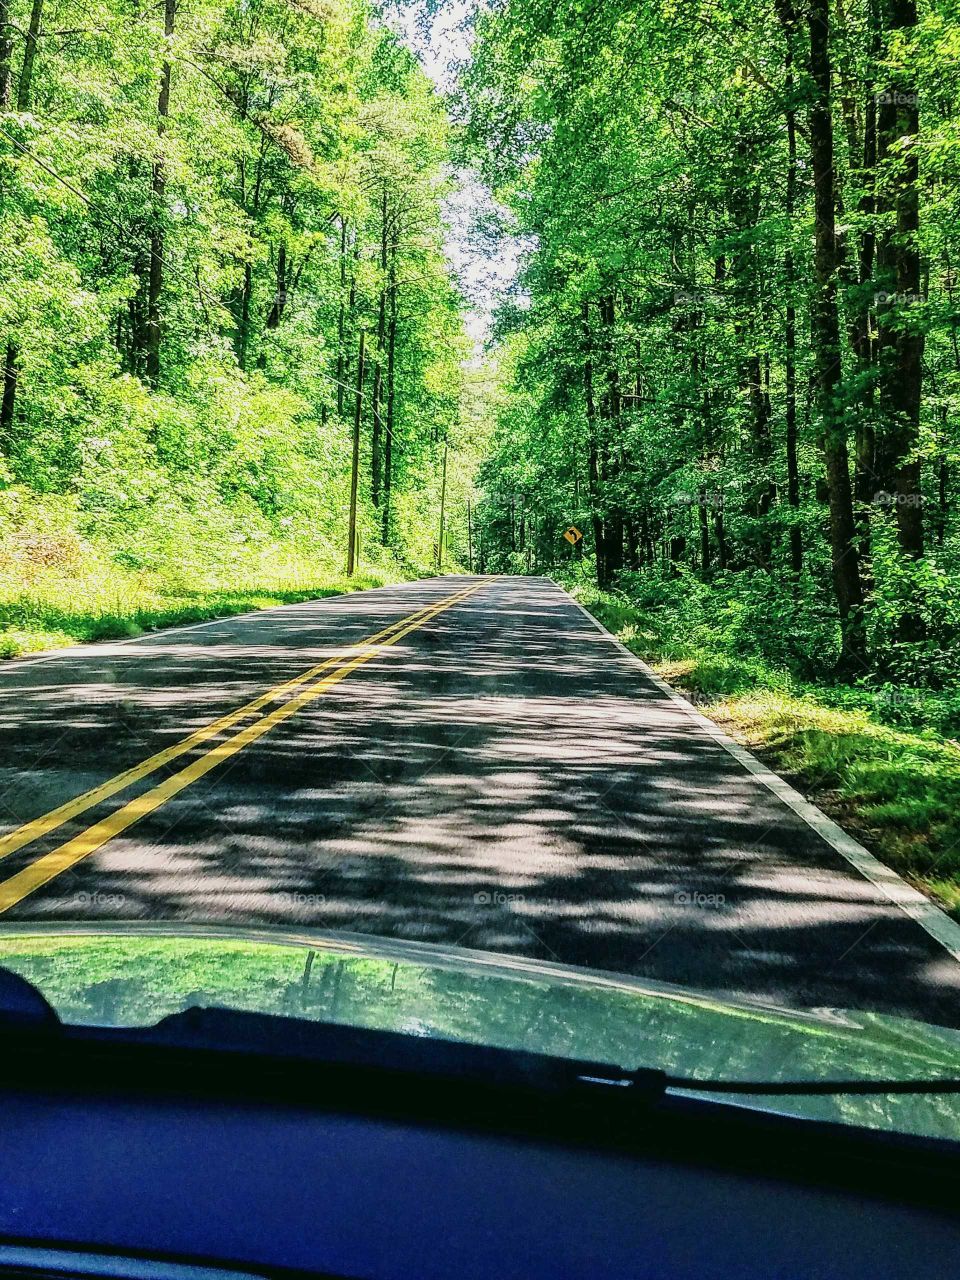 Driving through Guntersville State Park in Alabama